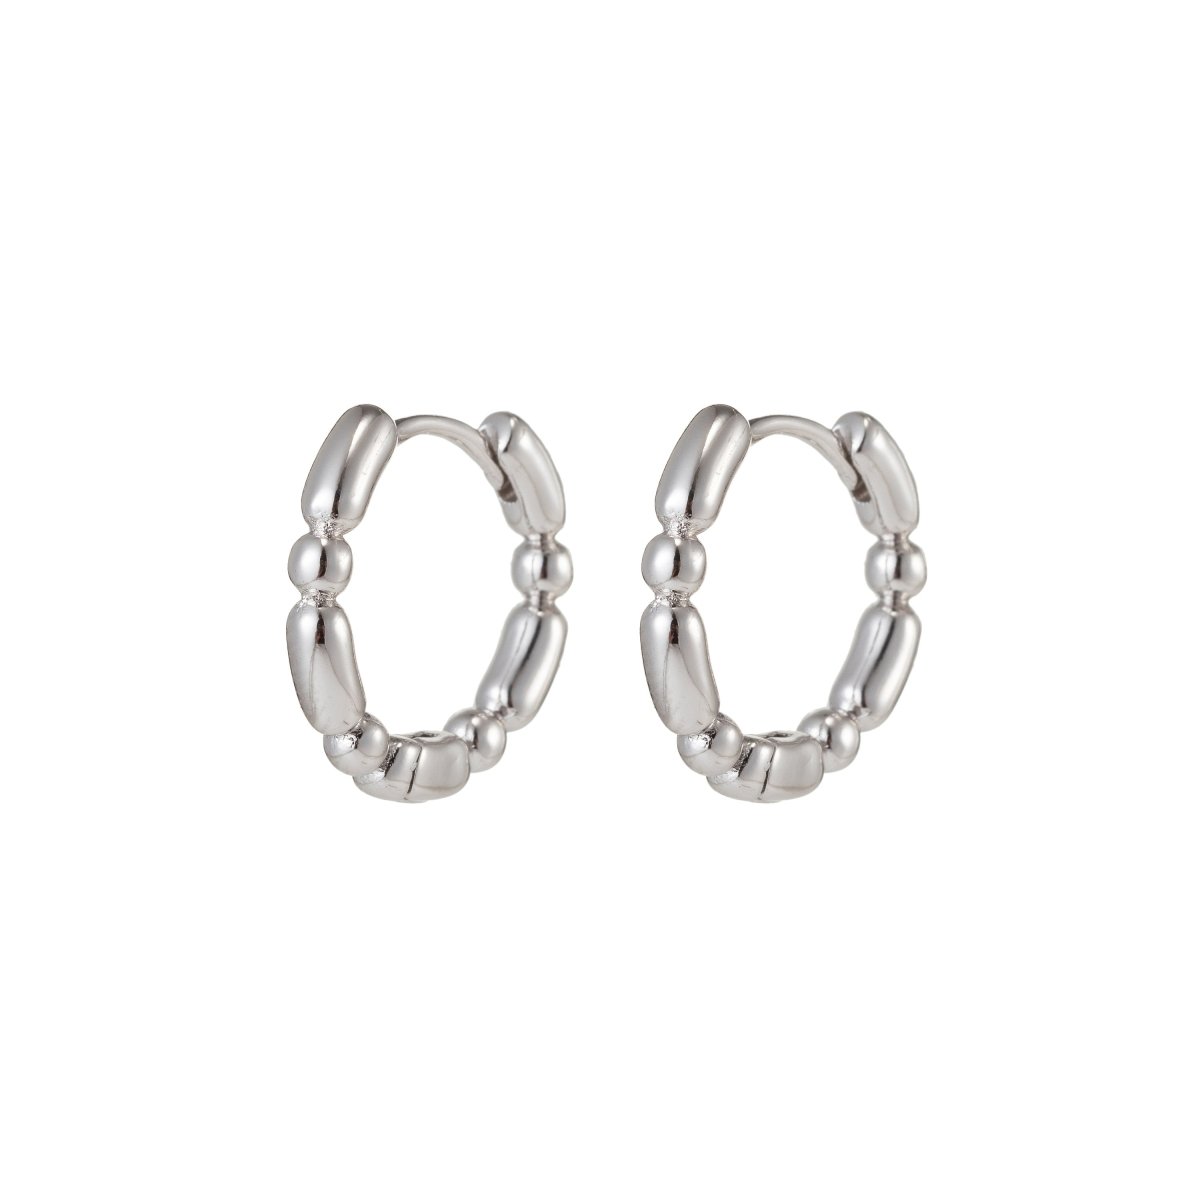 Small Silver Hoop Earrings, Silver Huggie Earrings, Simple Hoop Earrings 15mm Q-045 Q-047 Q-048 - DLUXCA